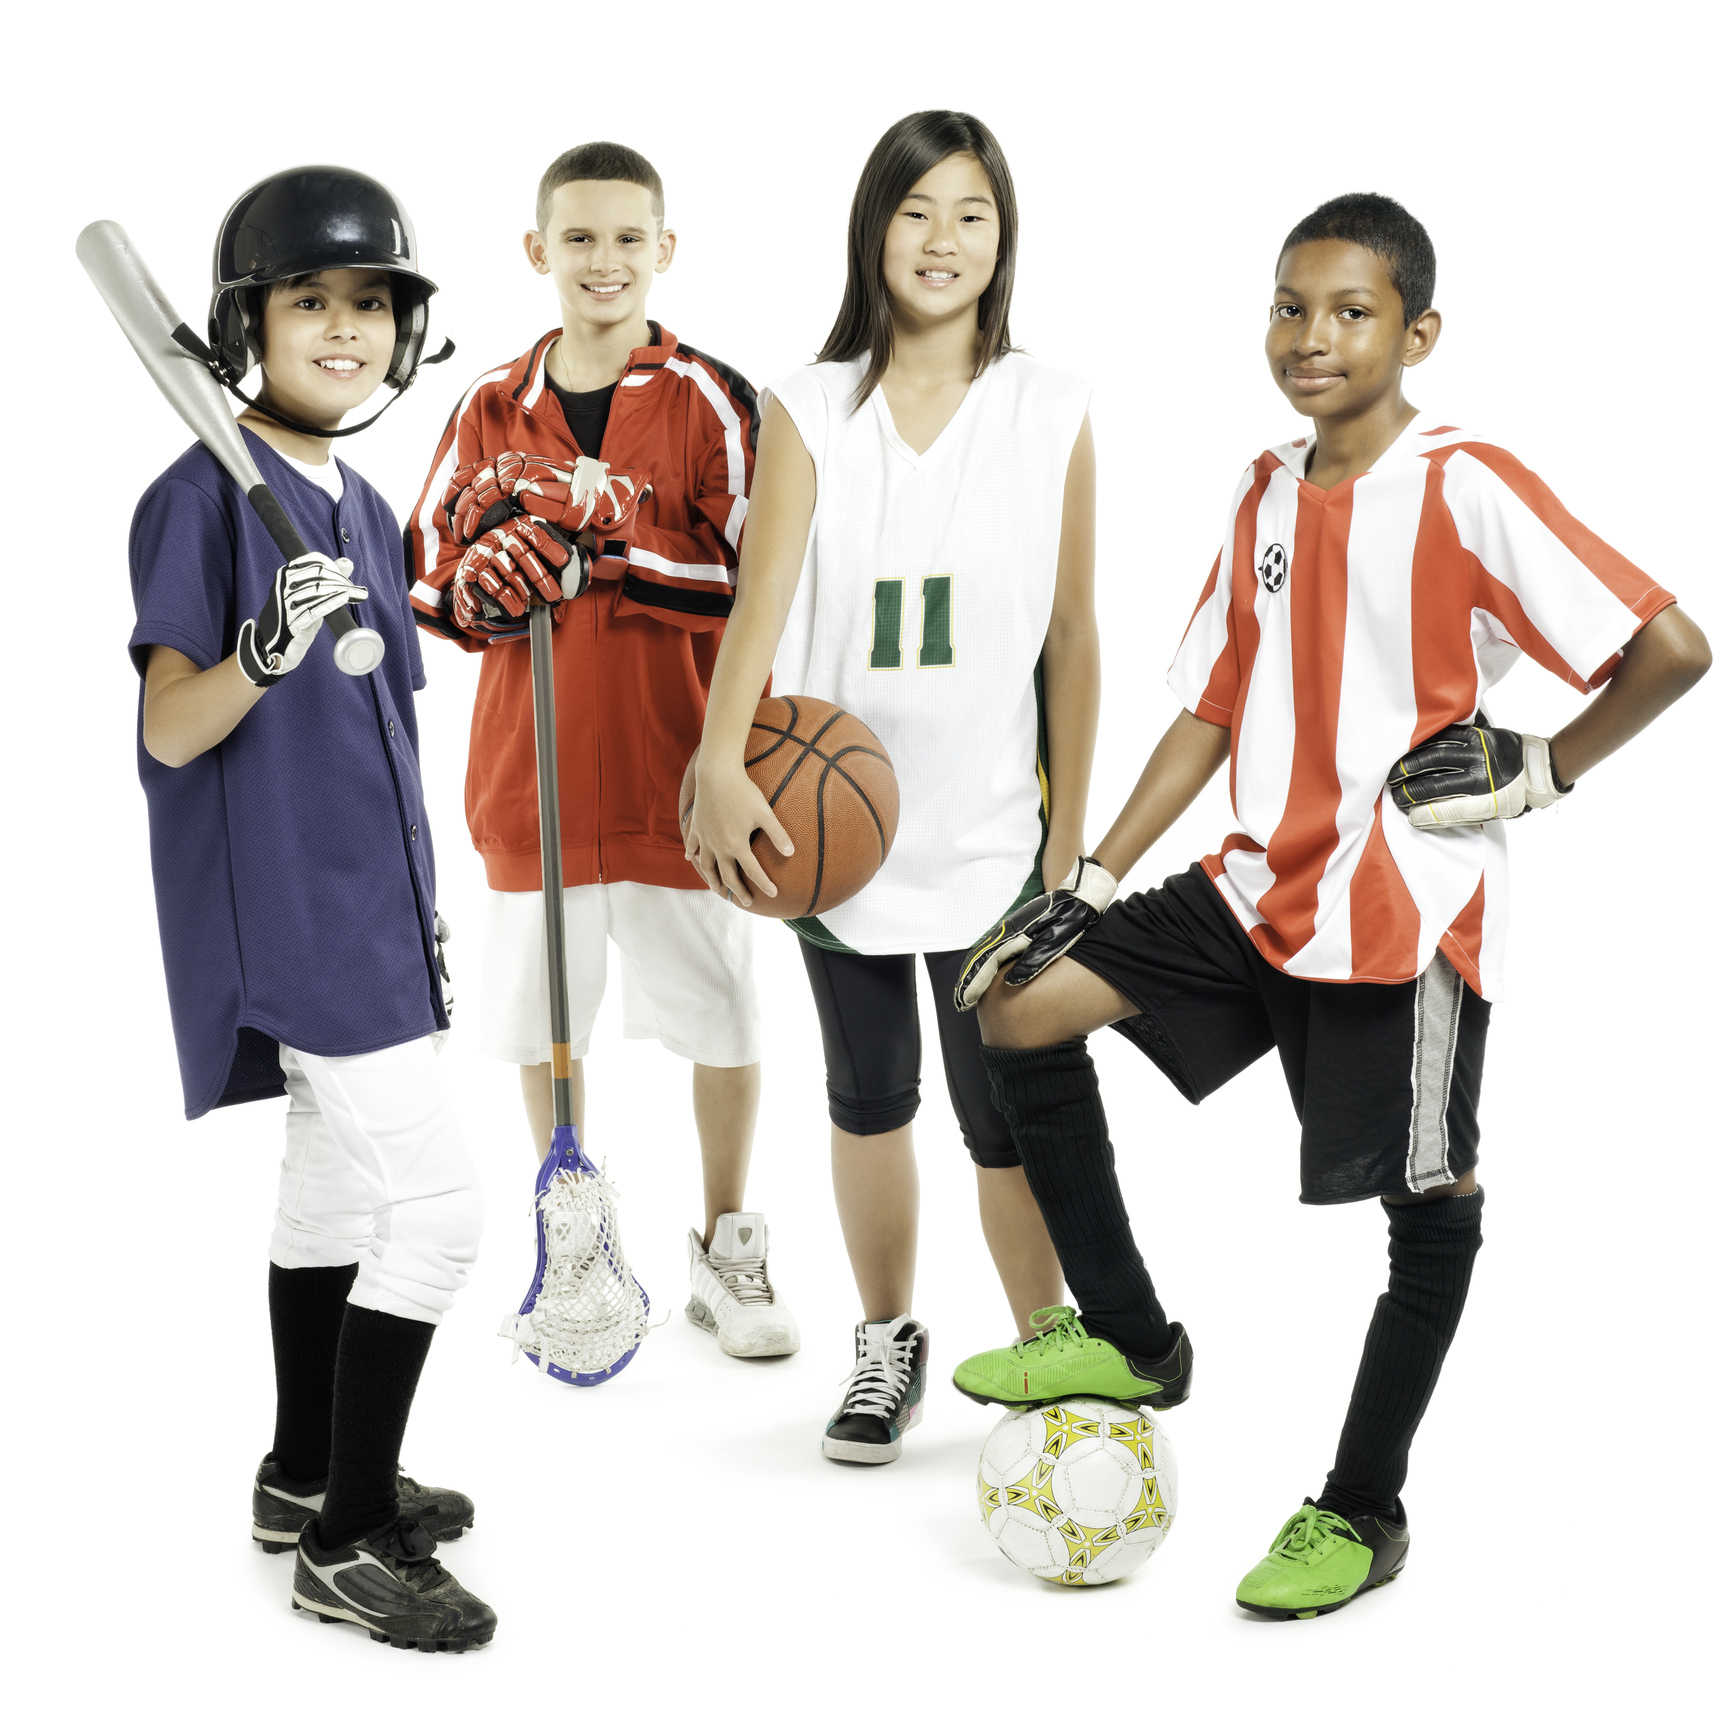 Do a team sport. Спорт дети. Одежда для детей спортсменов. Ребенок успешный в спорте. Спорт баскетбол дети.